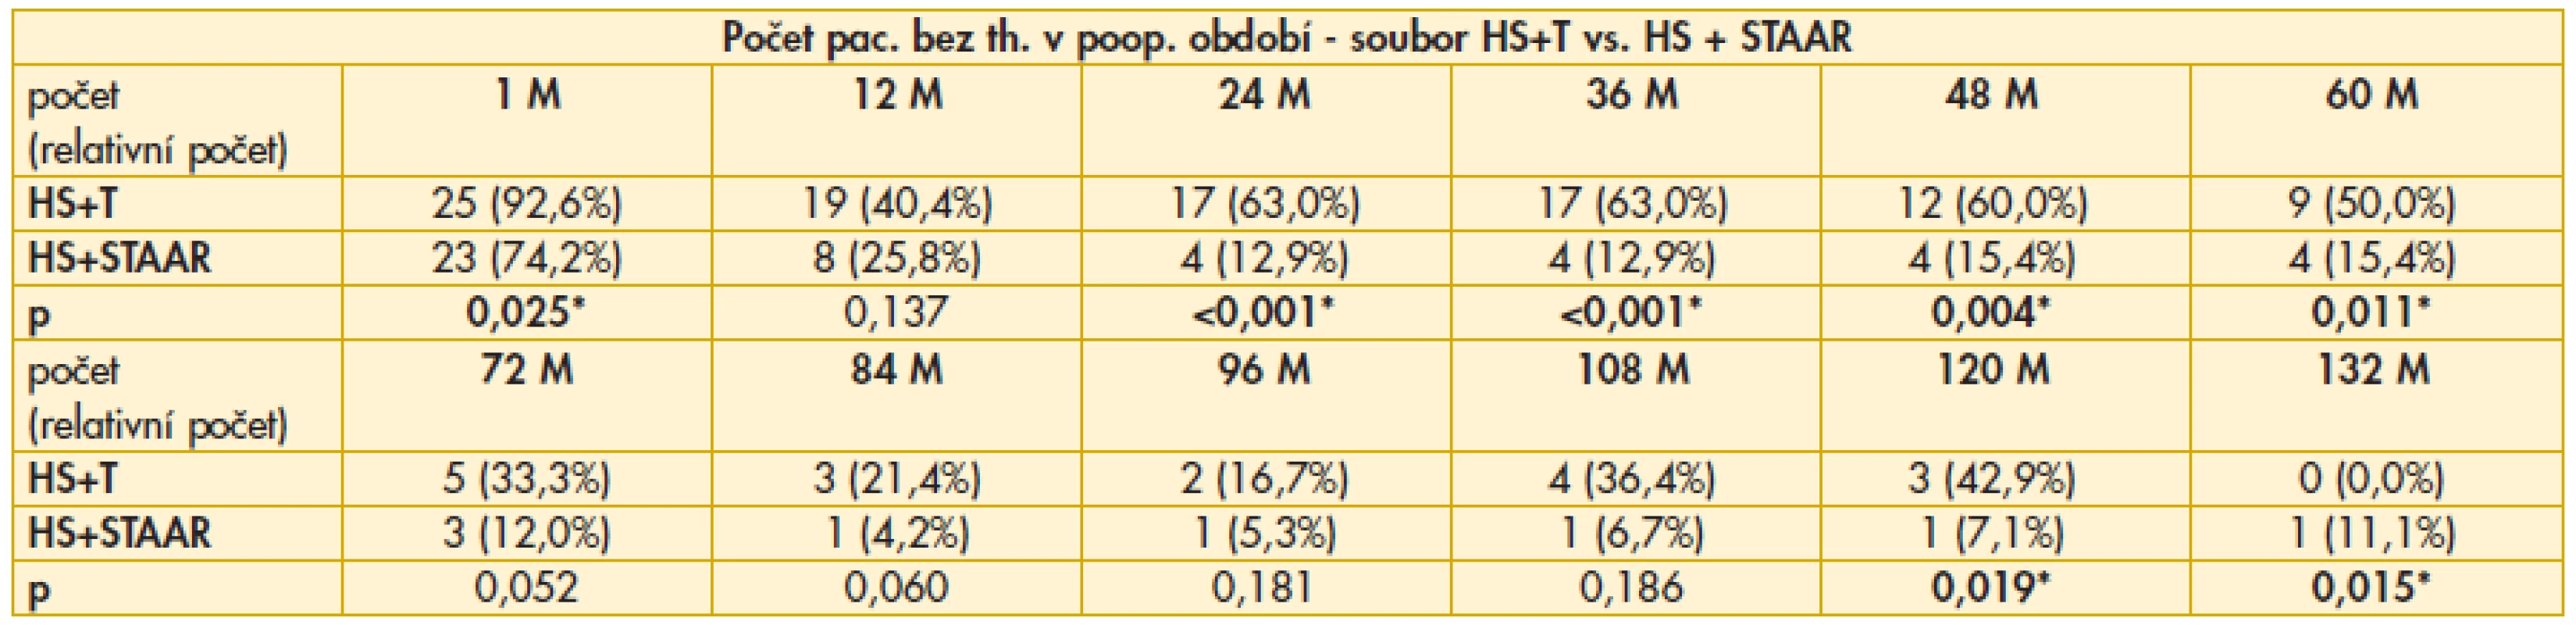 Výsledky srovnání počtu pacientů bez nutnosti aplikace lokální antiglaukomové terapie v pooperačním období mezi soubory HS+T vs. HS+STAAR